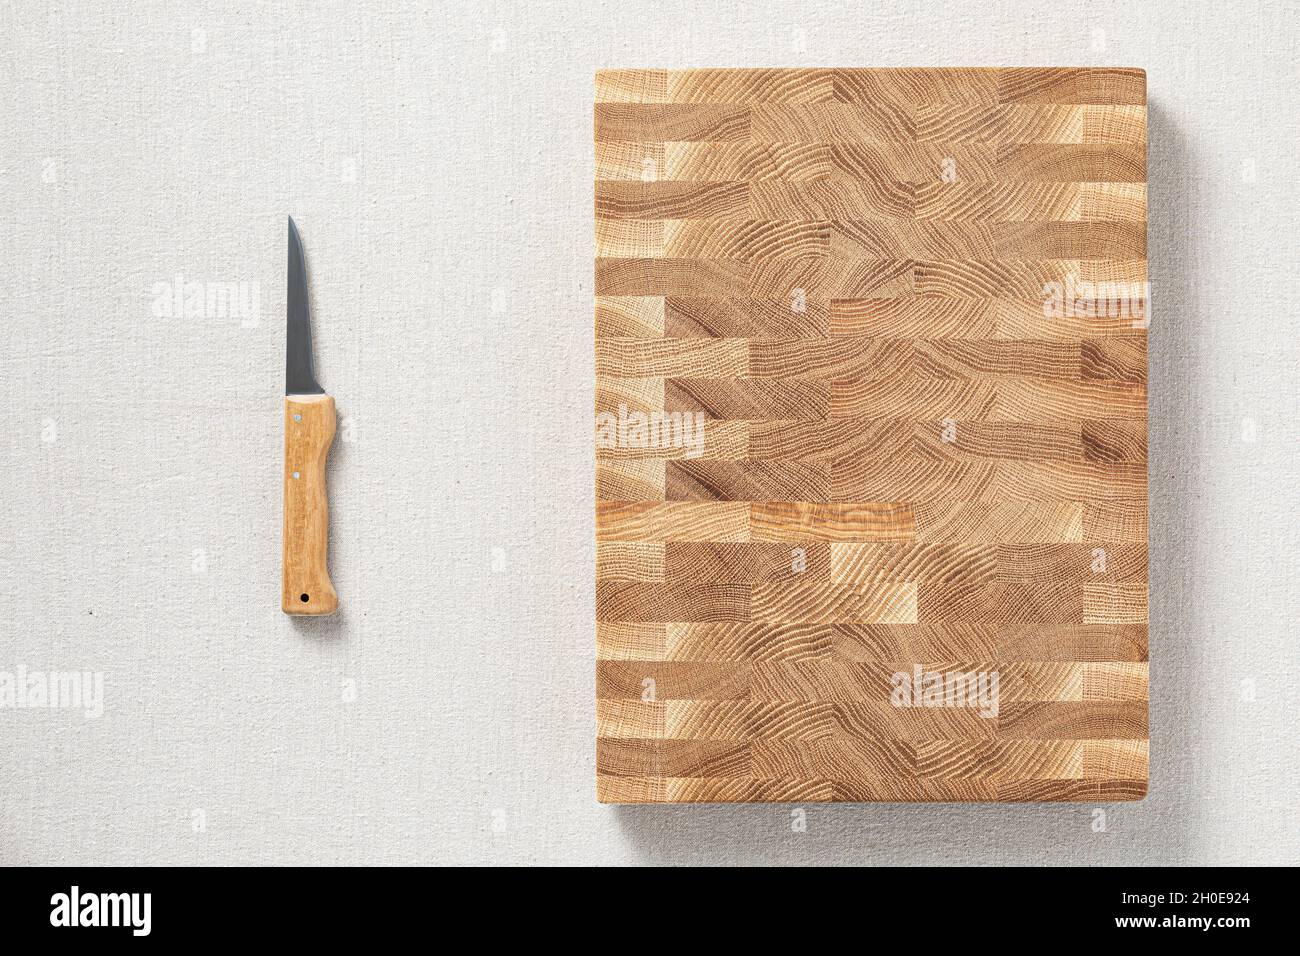 Ein Messer und eine Eiche gespleißt ​​wooden Schneidebrett sind auf Sackleinen. Der Querschnitt der Eichendiele hat eine Mosaikstruktur. Hintergrundelement. Stockfoto